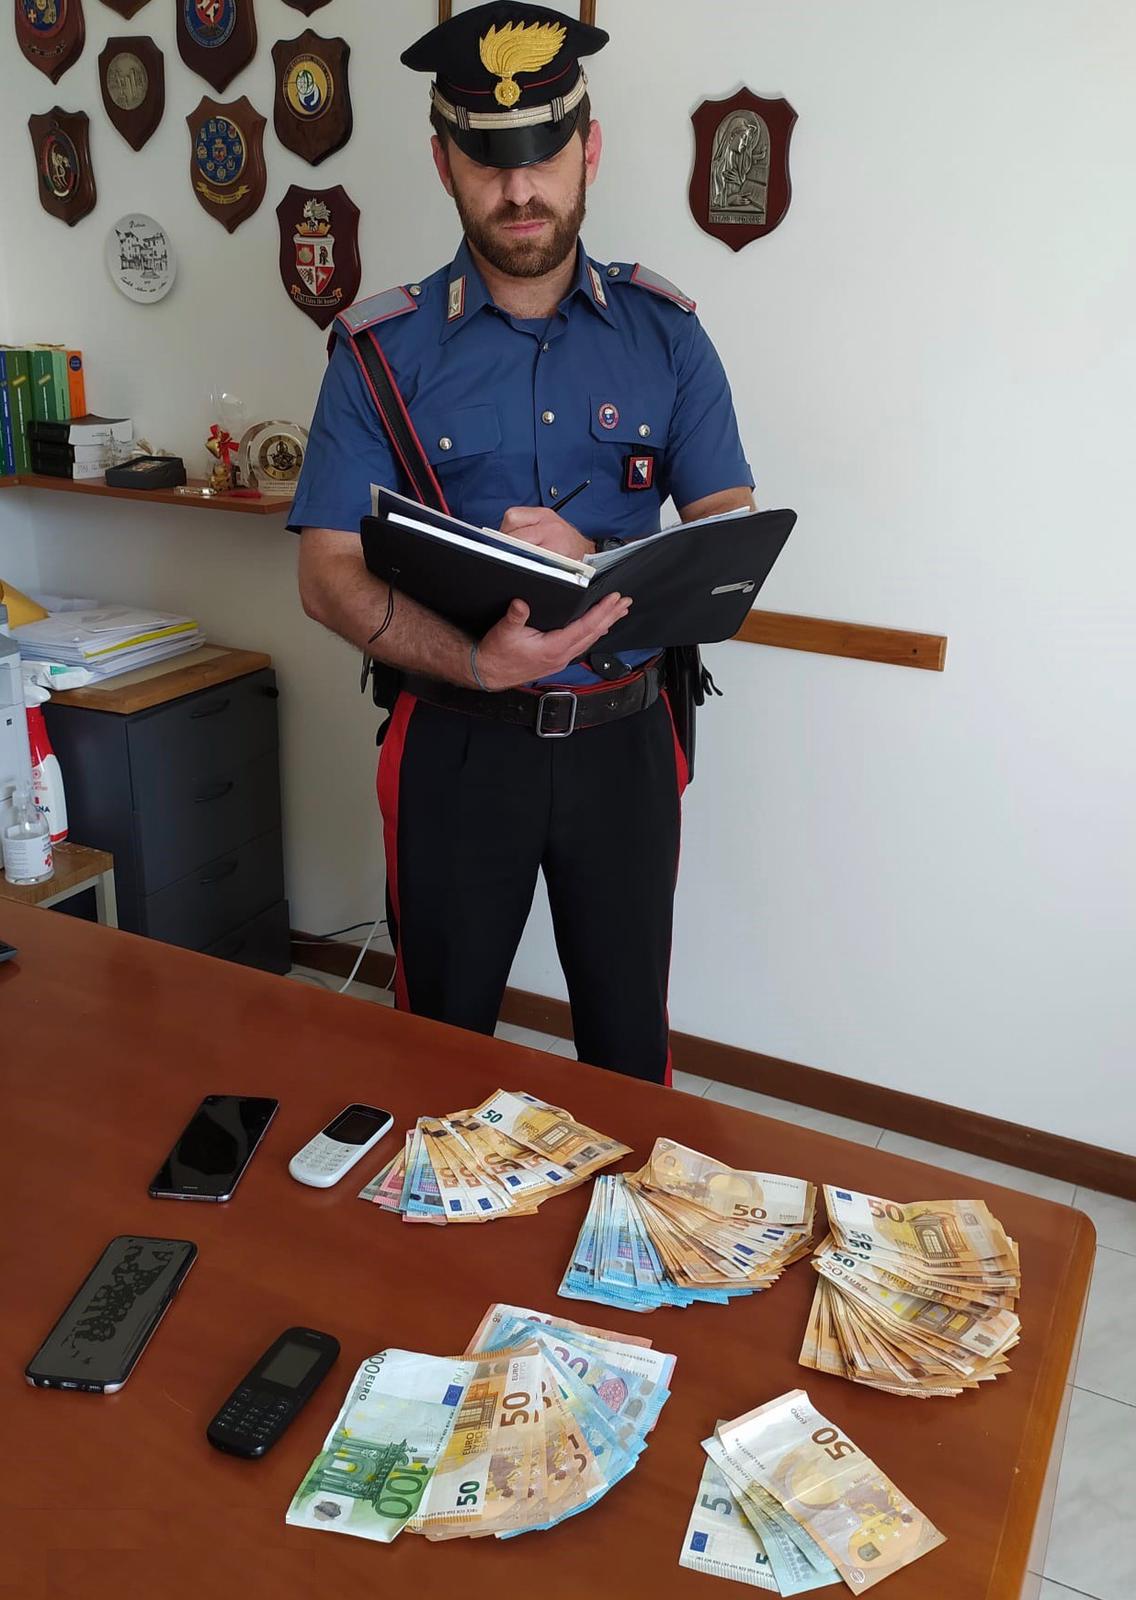 Cronaca, Carabinieri: due arresti per spaccio "a domicilio